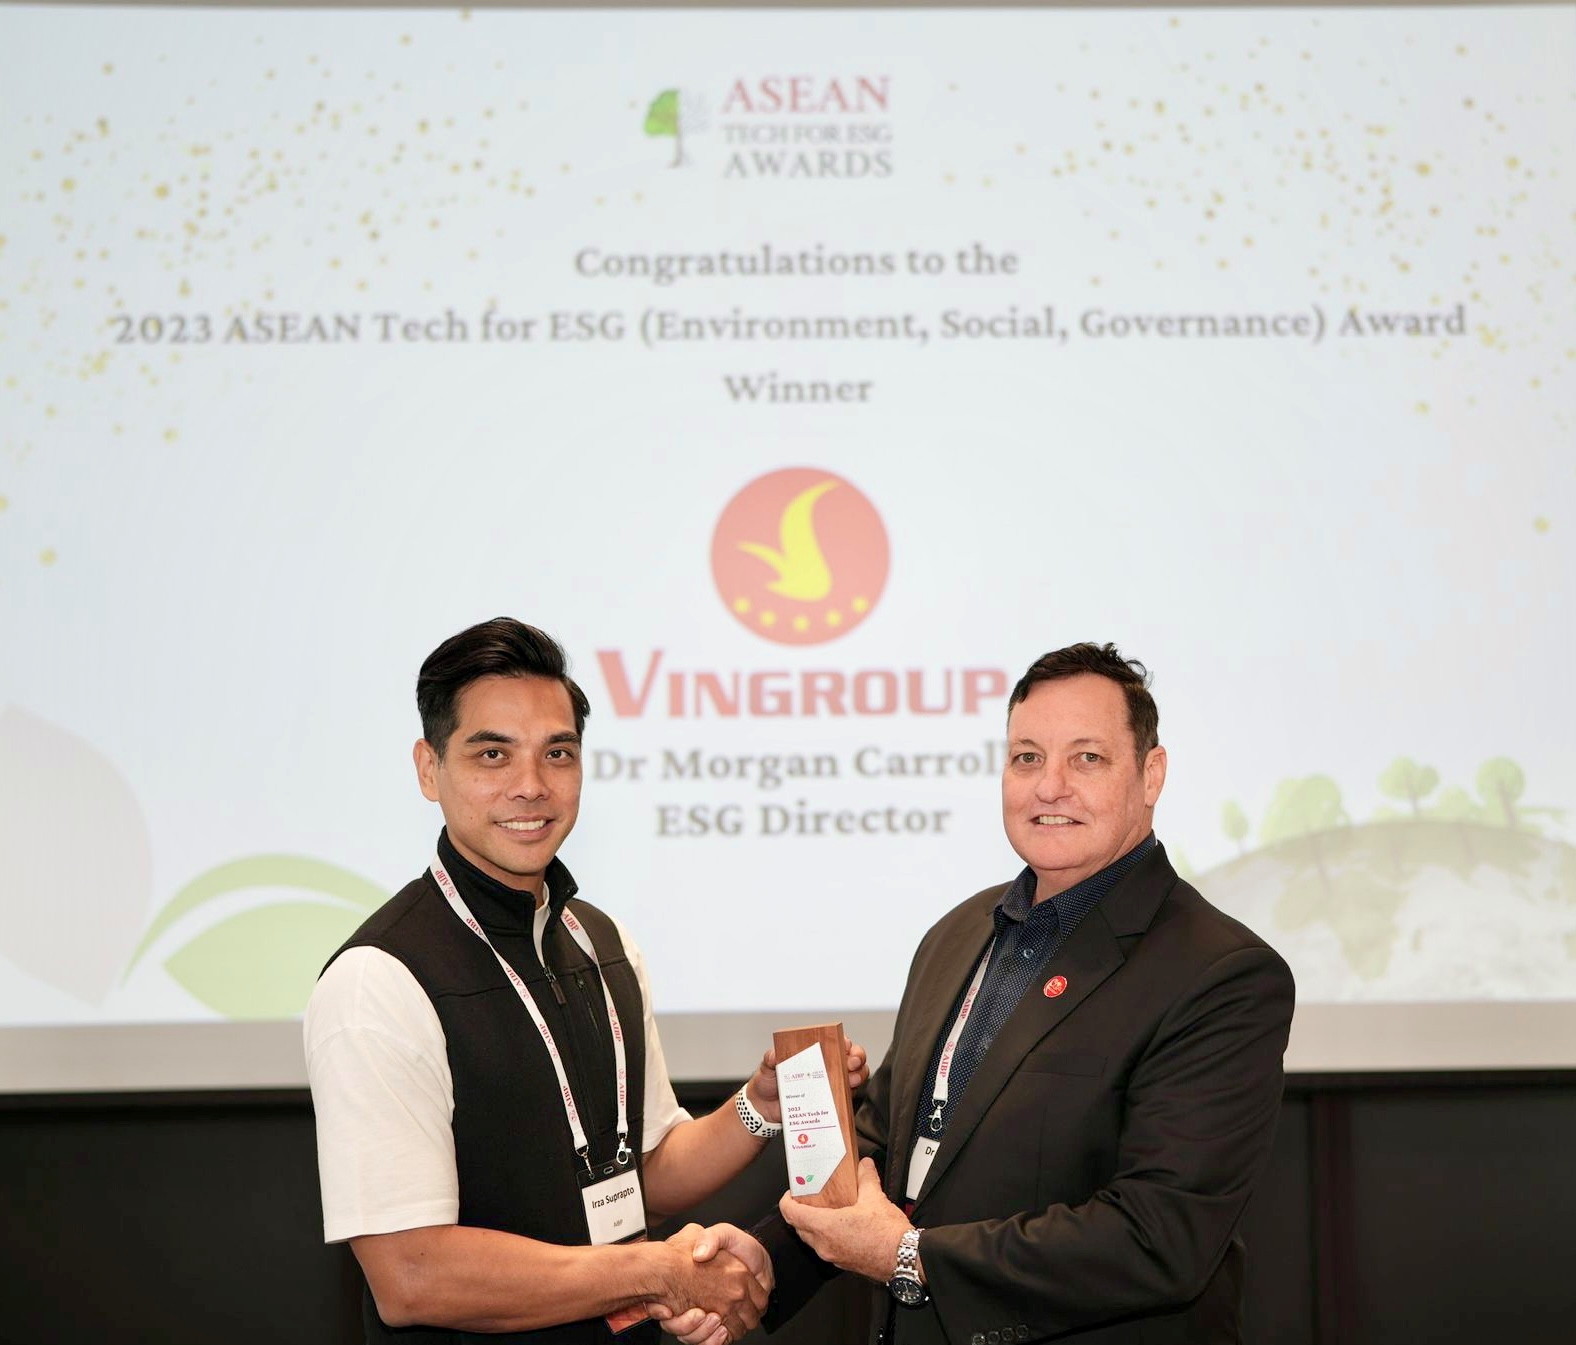 Kinh tế - Vingroup giành Giải thưởng Công nghệ Bền vững ASEAN 2023